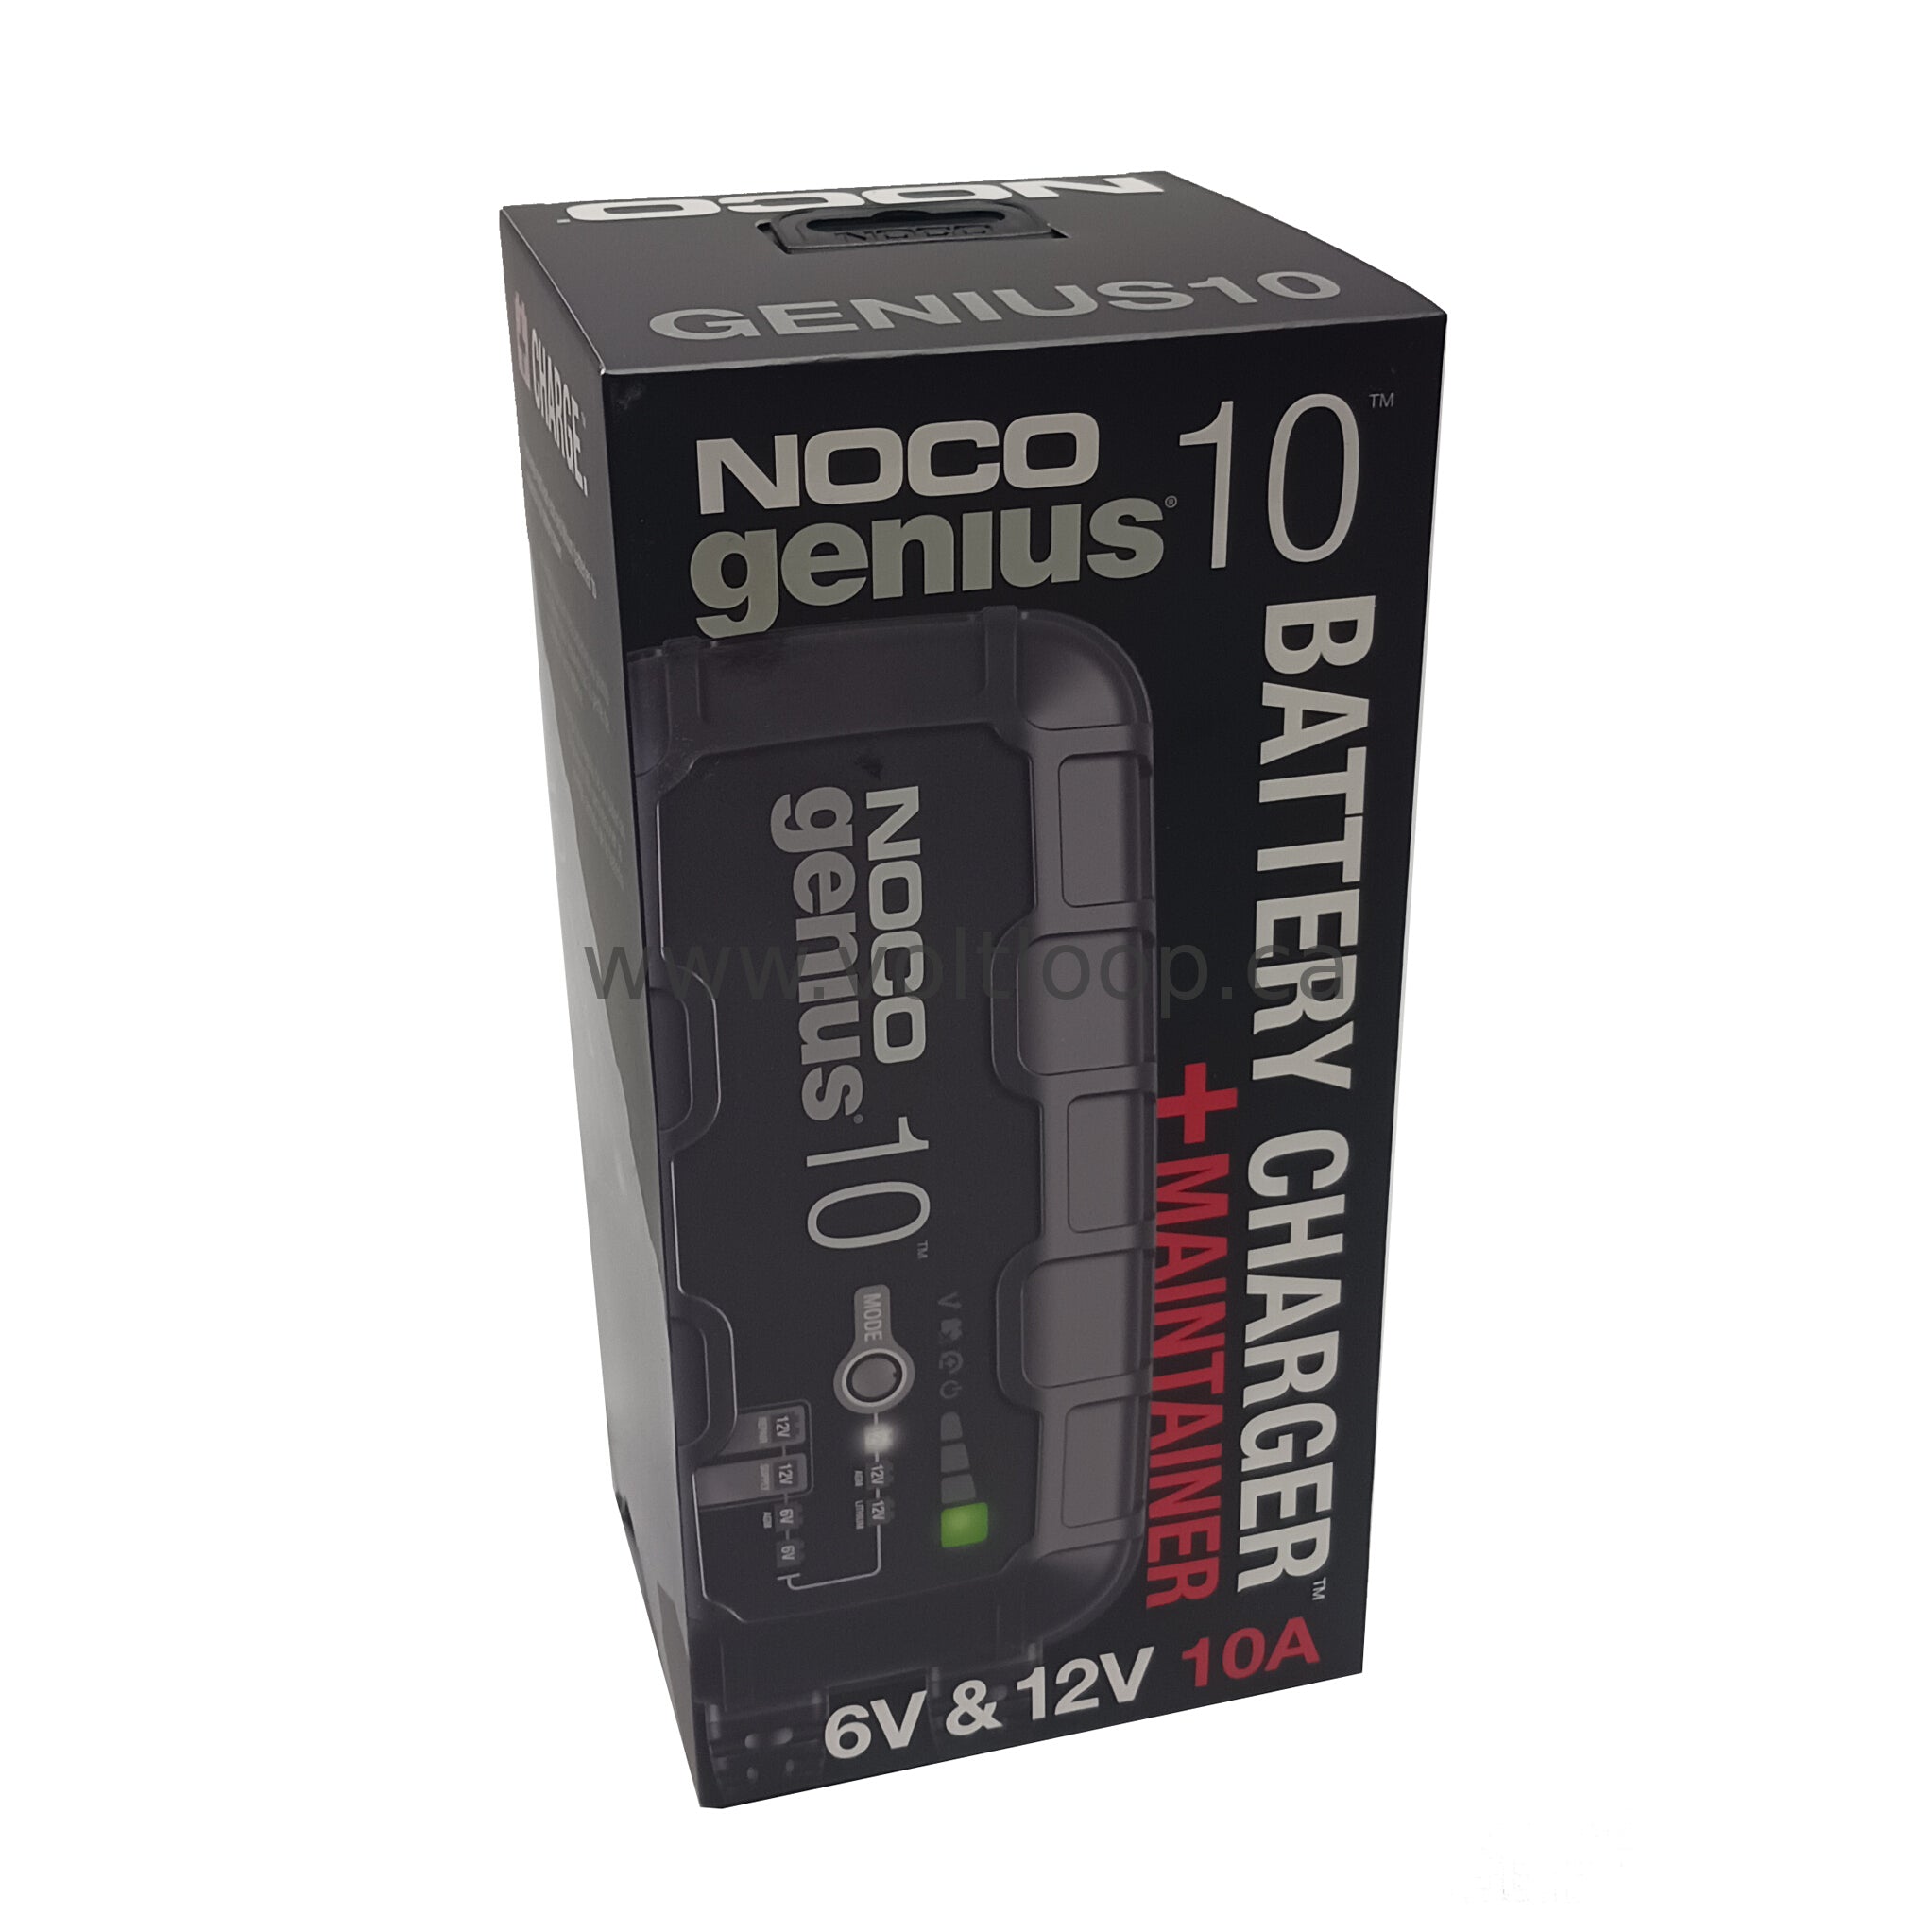 Noco GENIUS10 6V/12V Smart Battery Charger | 10 Amp